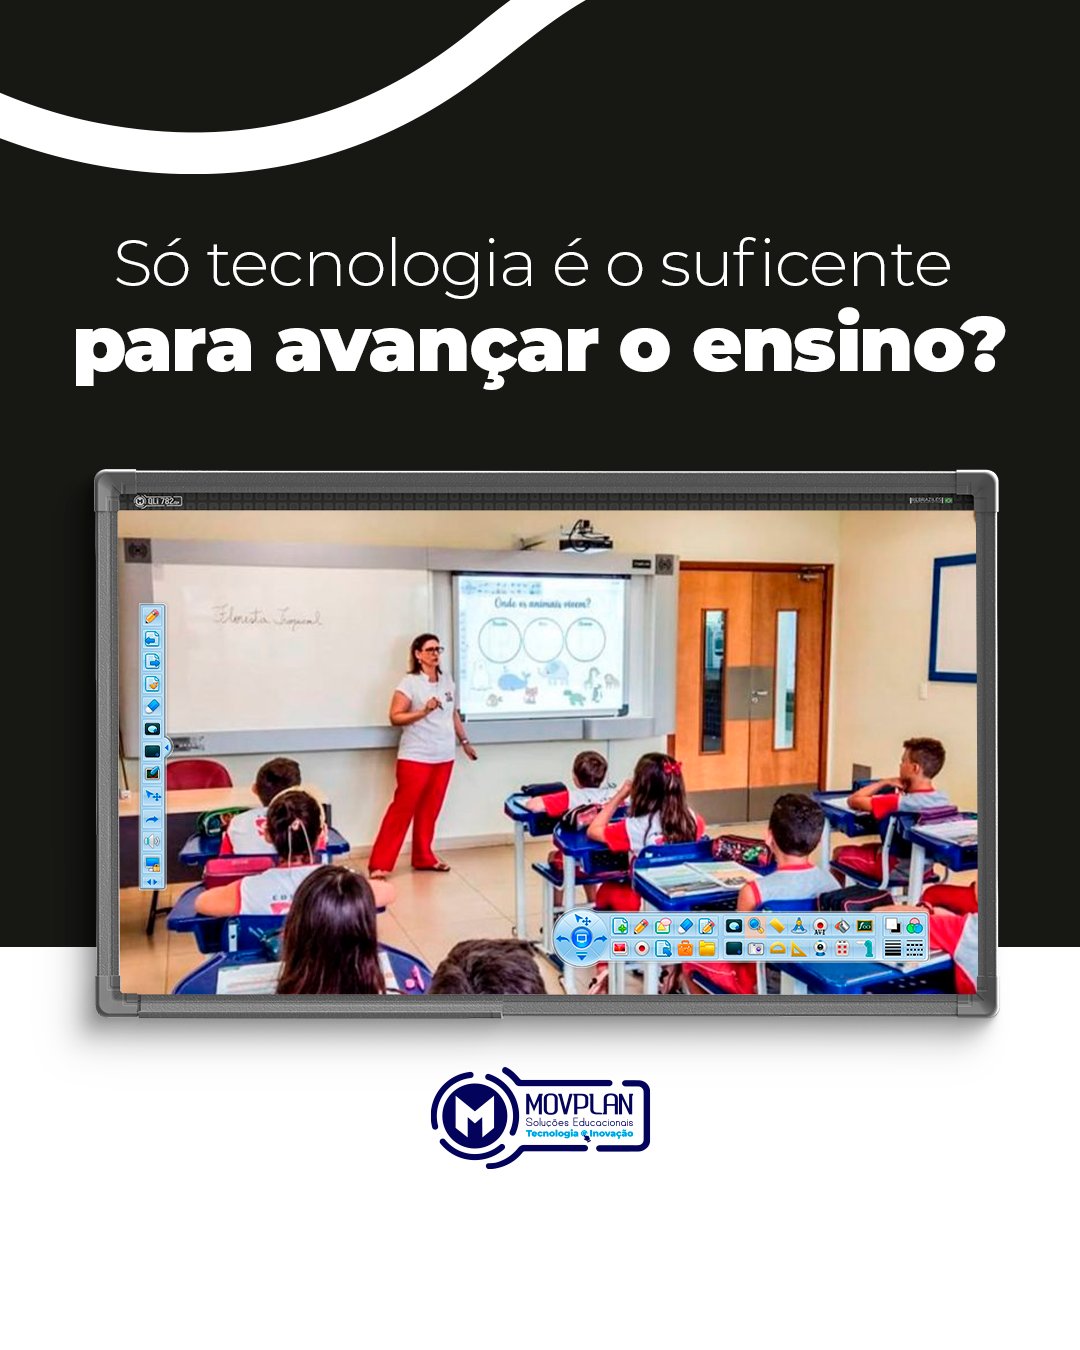 Ser professor O que um professor precisar ser e fazer?! #educaçao #